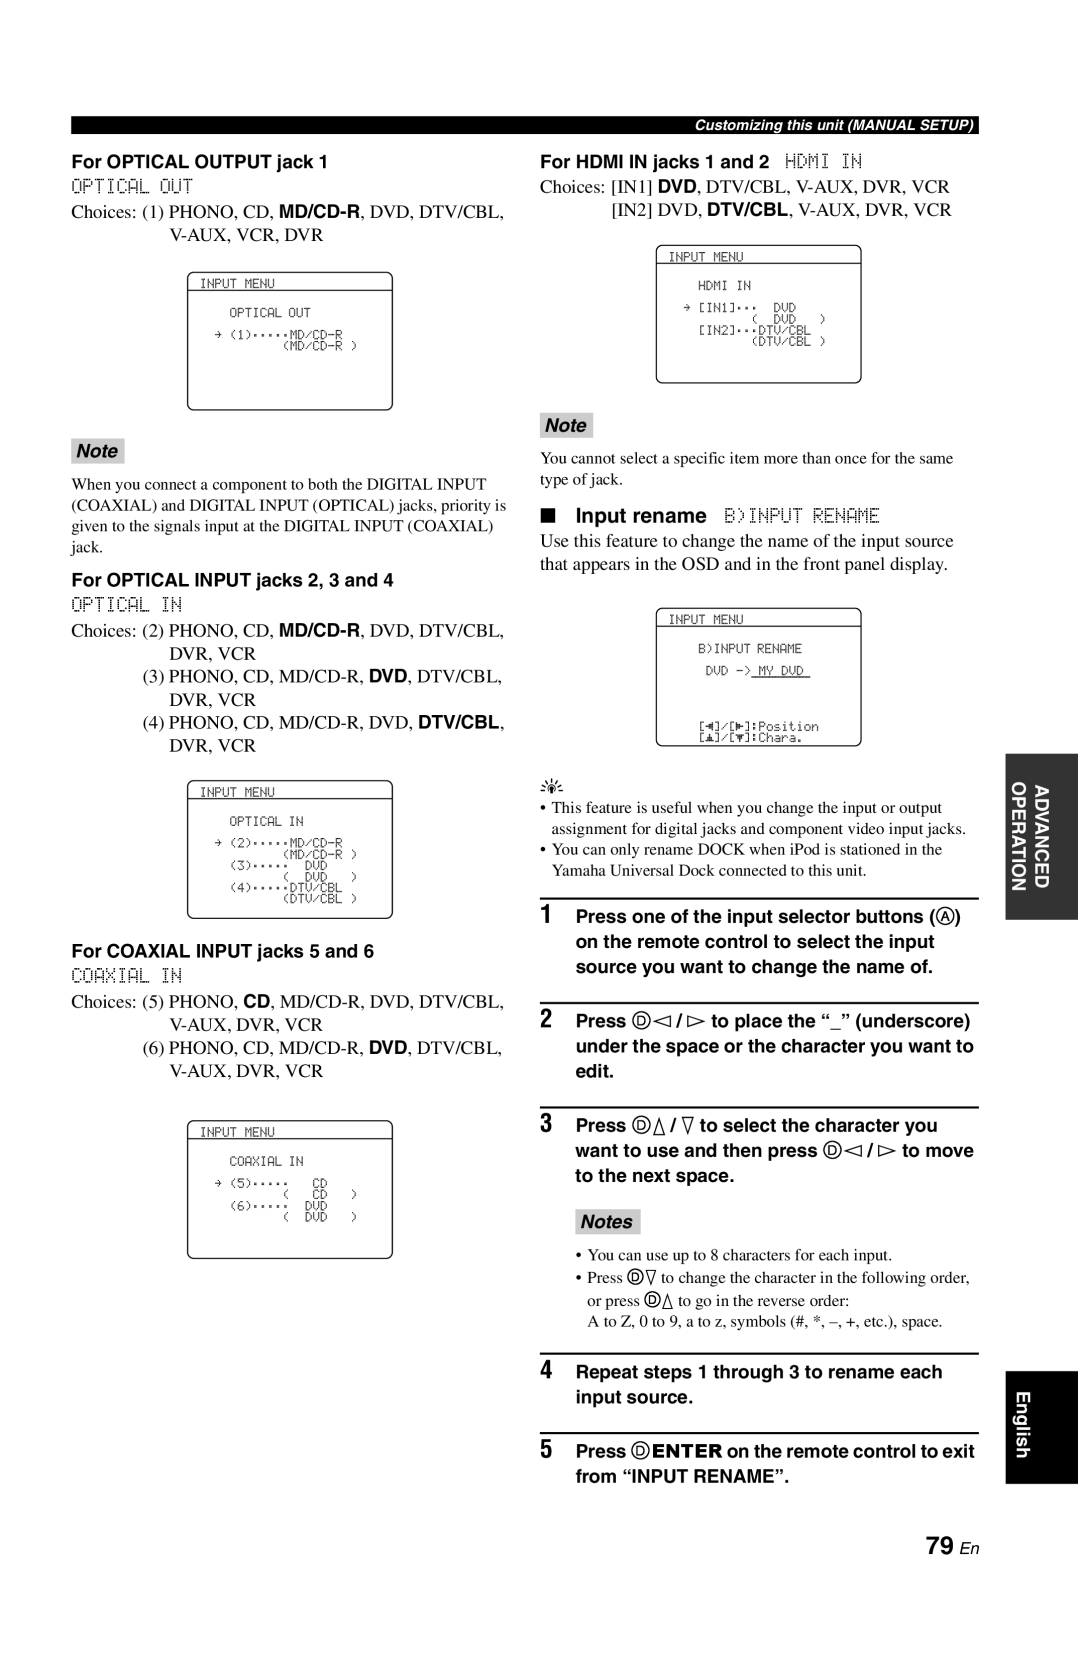 Yamaha RX-V861 owner manual 79 En, Notes 